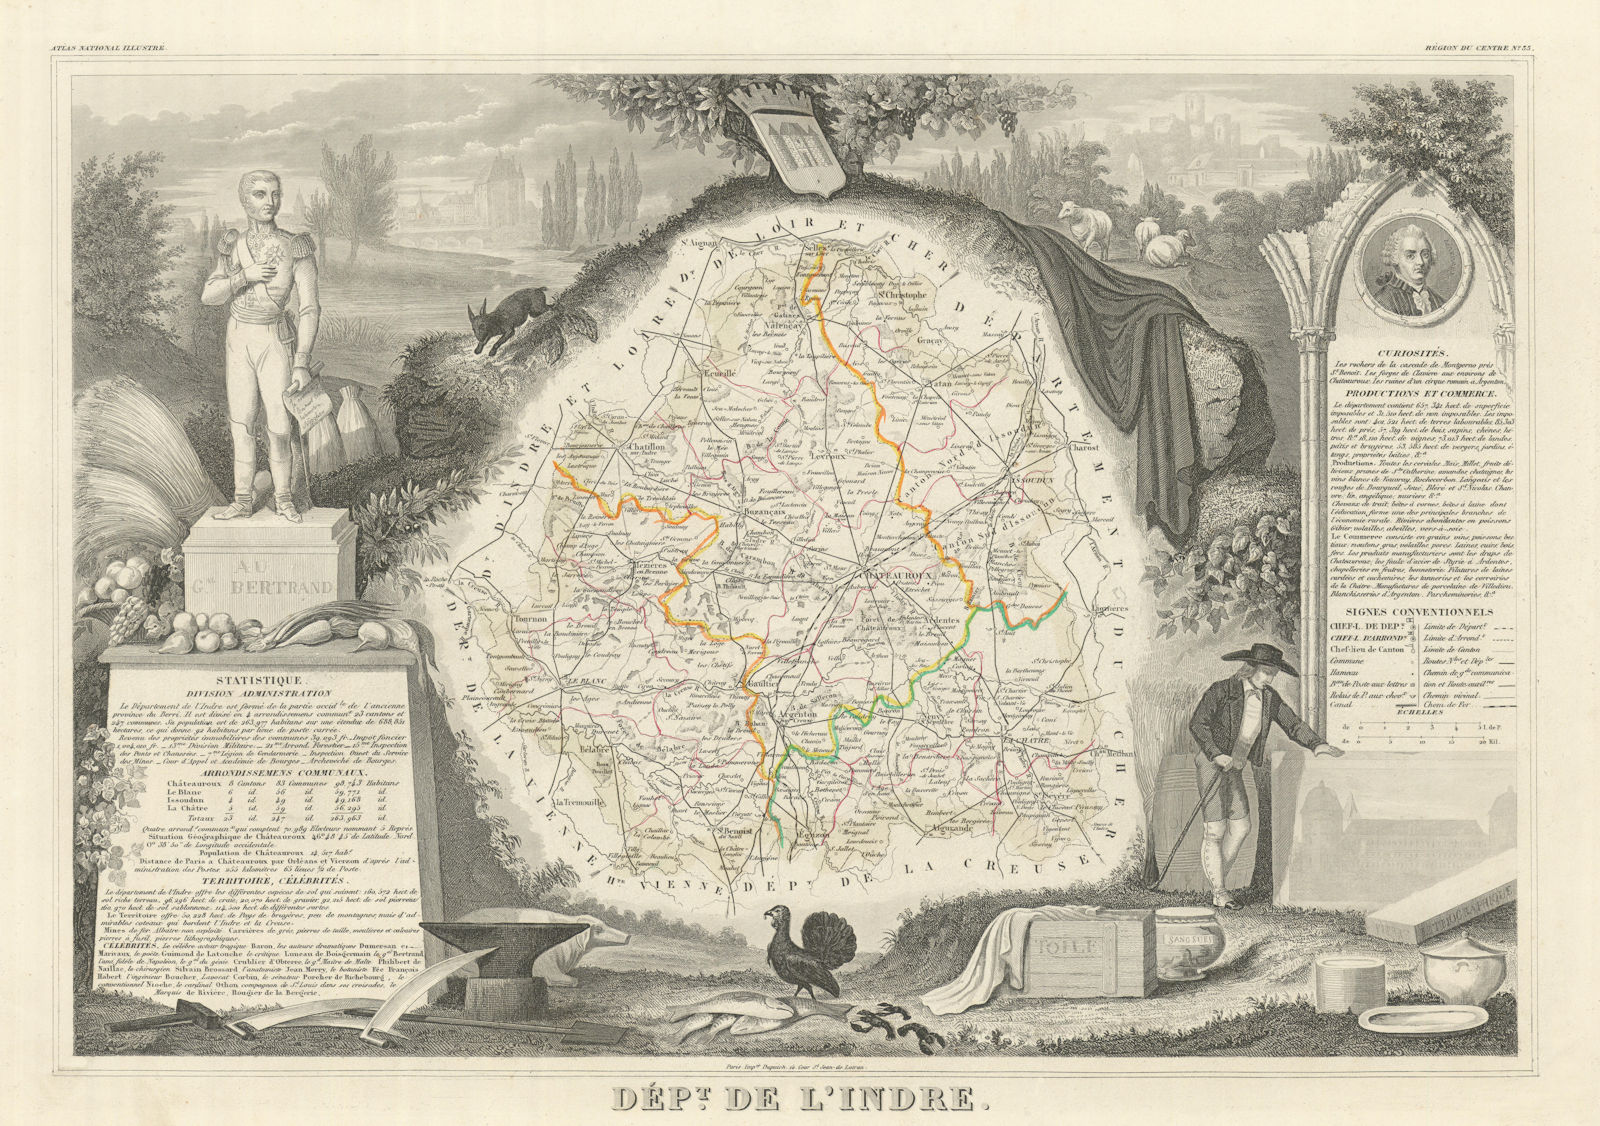 Associate Product Département de l'INDRE. Decorative antique map/carte by Victor LEVASSEUR 1856